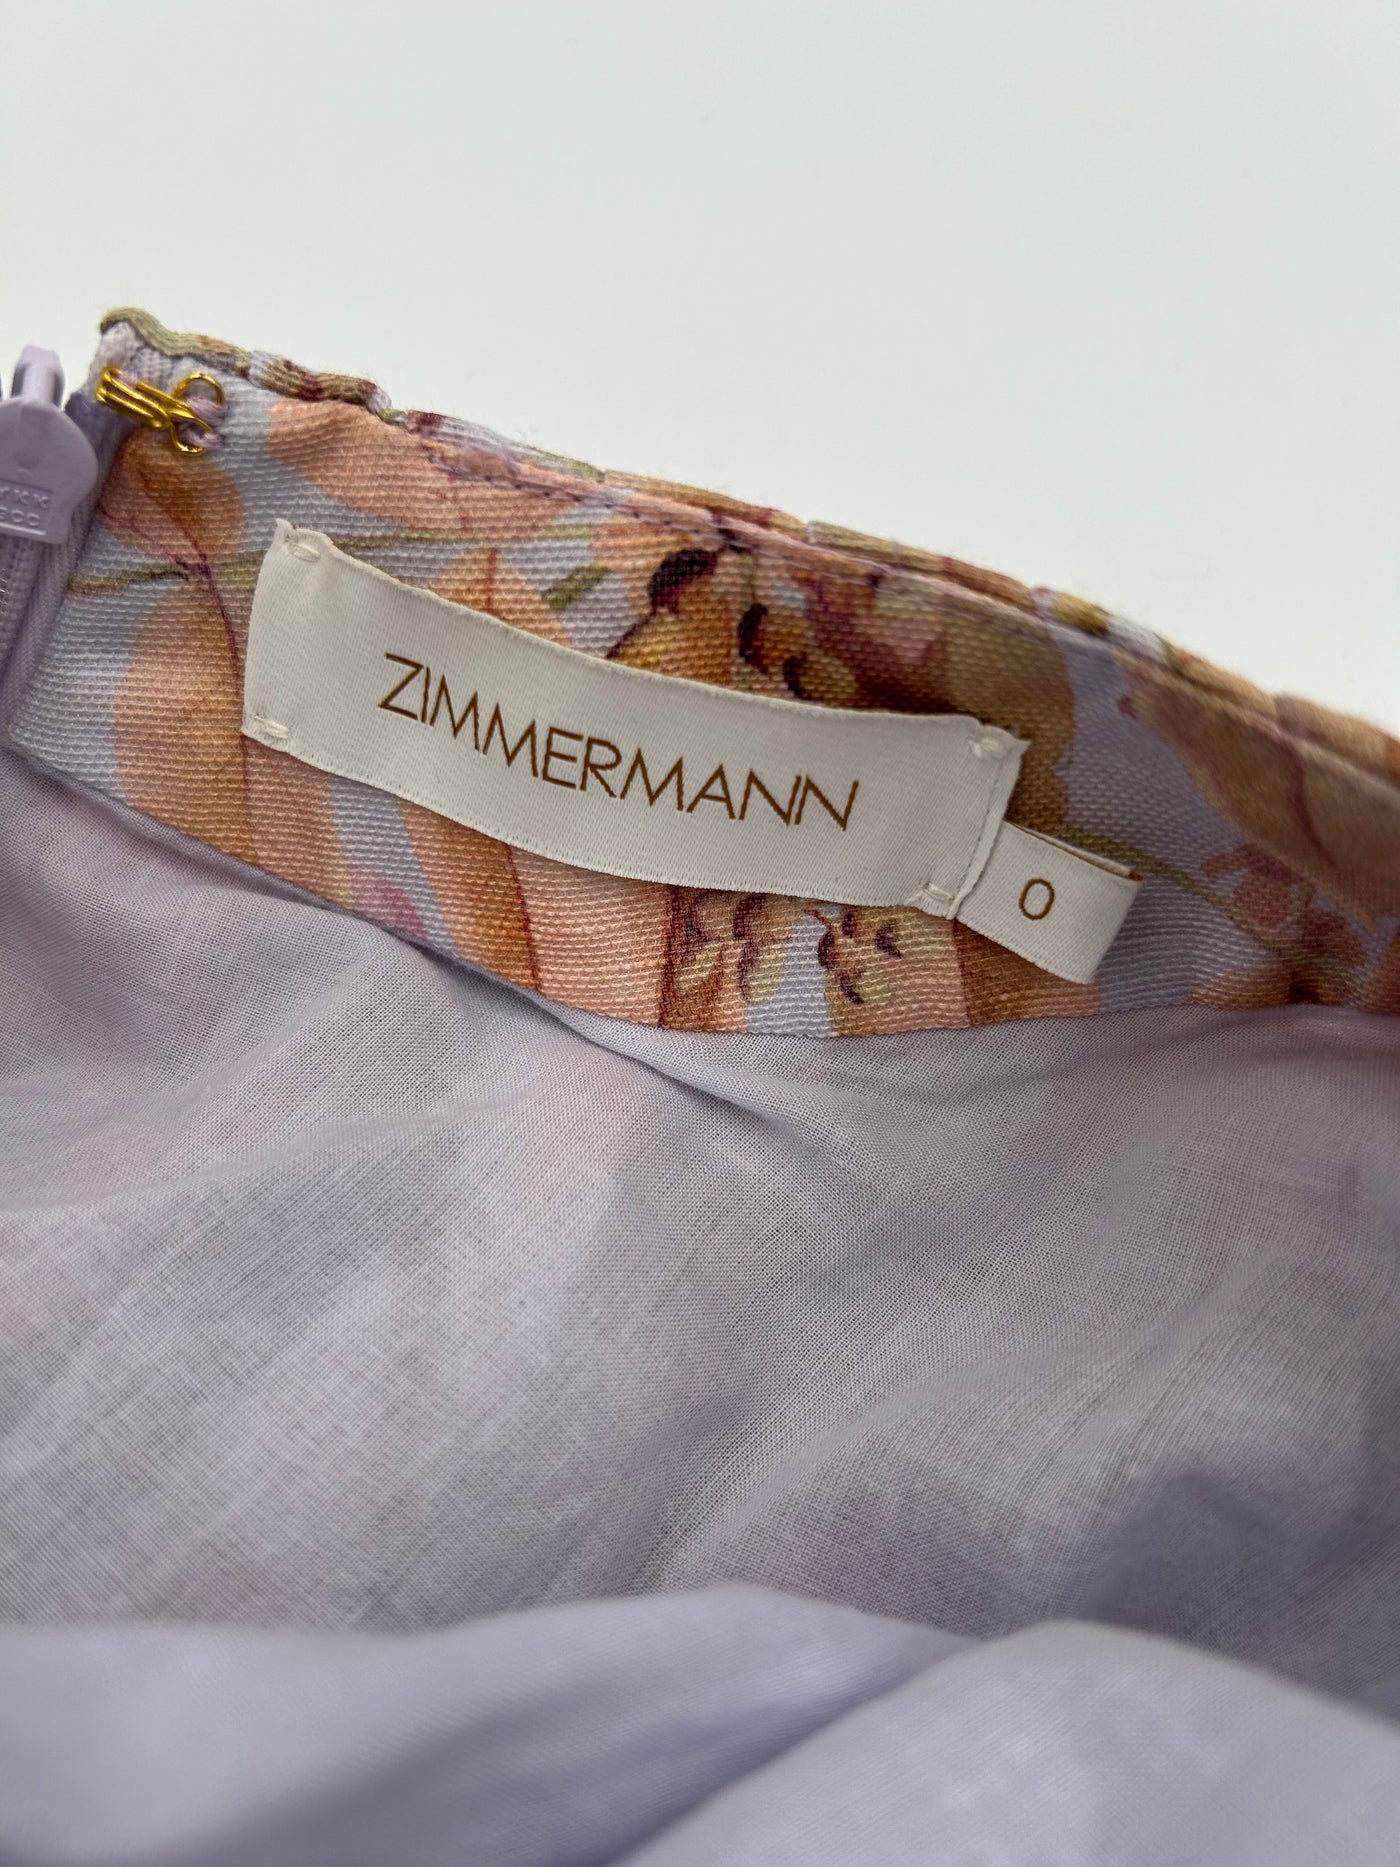 ZIMMERMANN botanica cut out bralette mini dress size 0 RRP: $2248